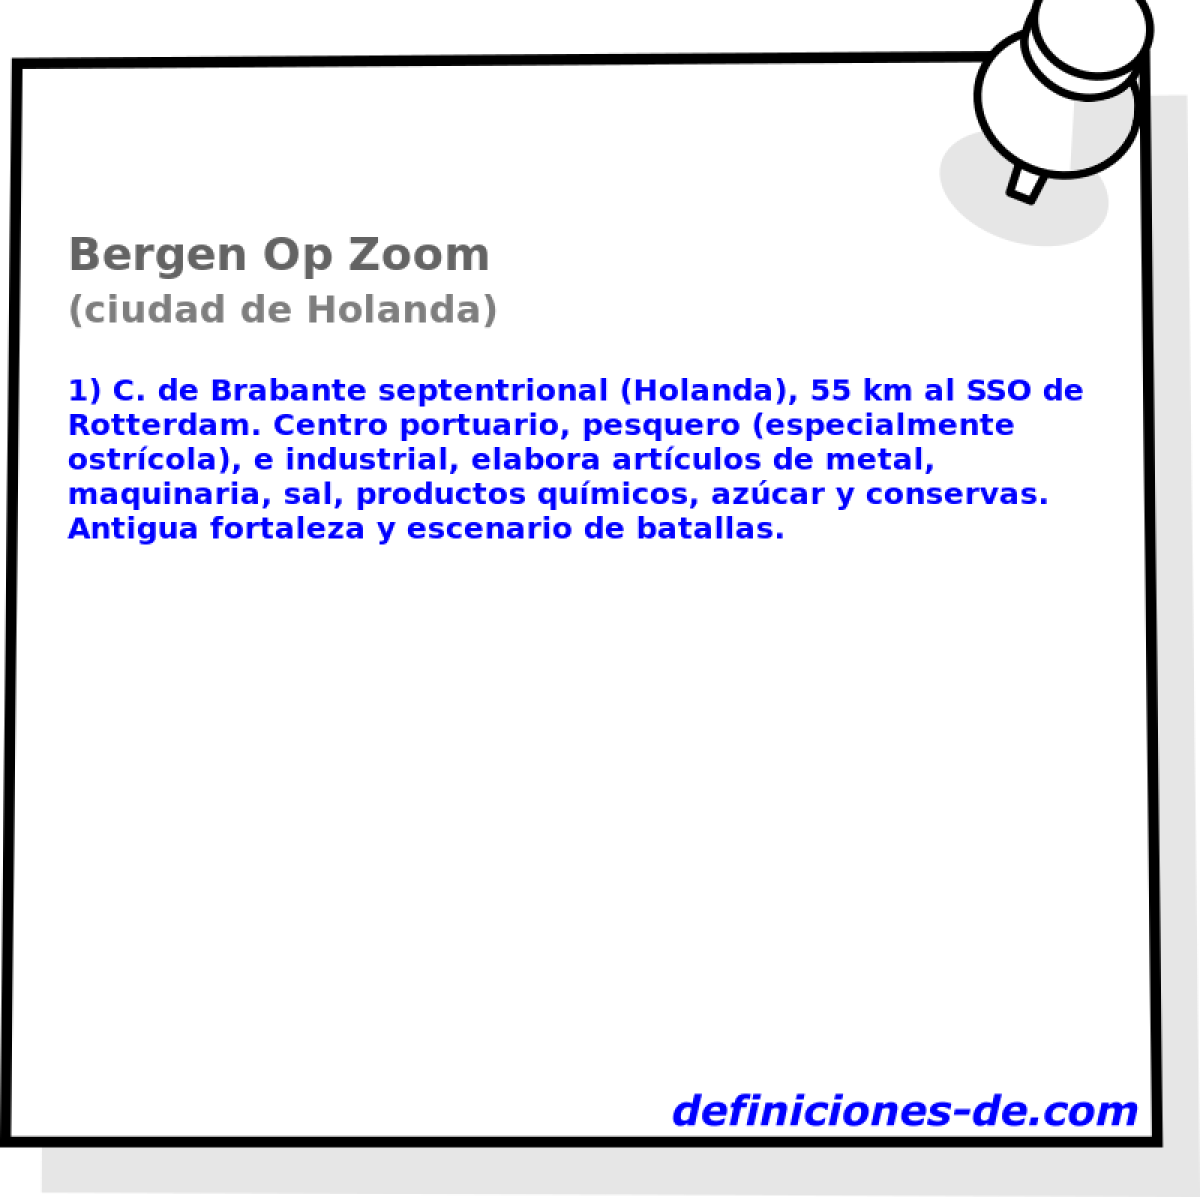 Bergen Op Zoom (ciudad de Holanda)